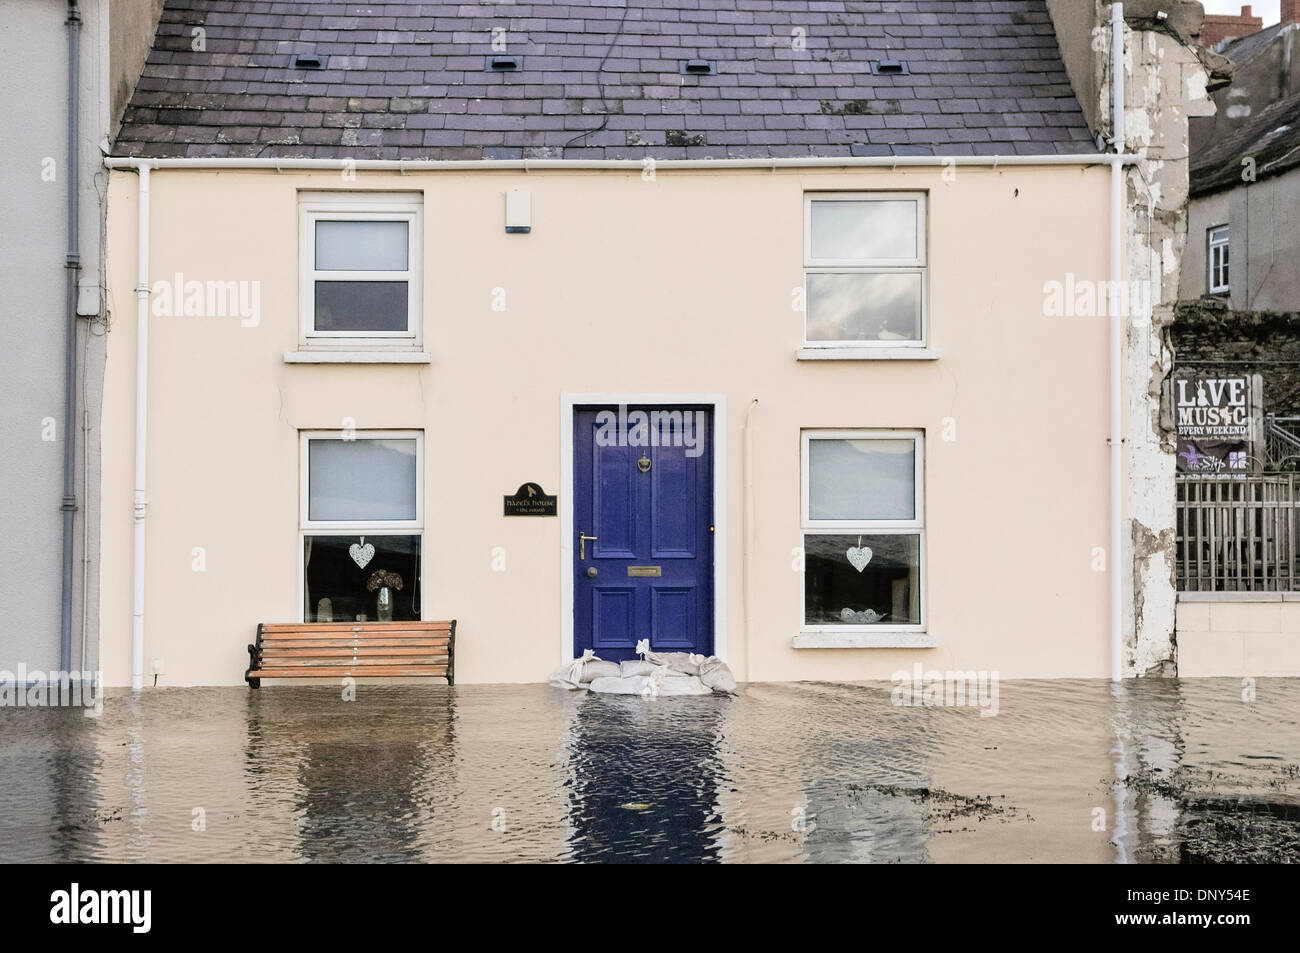 Portaferry, Irlande du Nord. 6 Jan 2014 - Une maison d'éviter de justesse en crue Portaferry, Irlande du Nord. La ville était à risque de graves inondations causées par les marées hautes et les tempêtes. Crédit : Stephen Barnes/Alamy Live News Banque D'Images